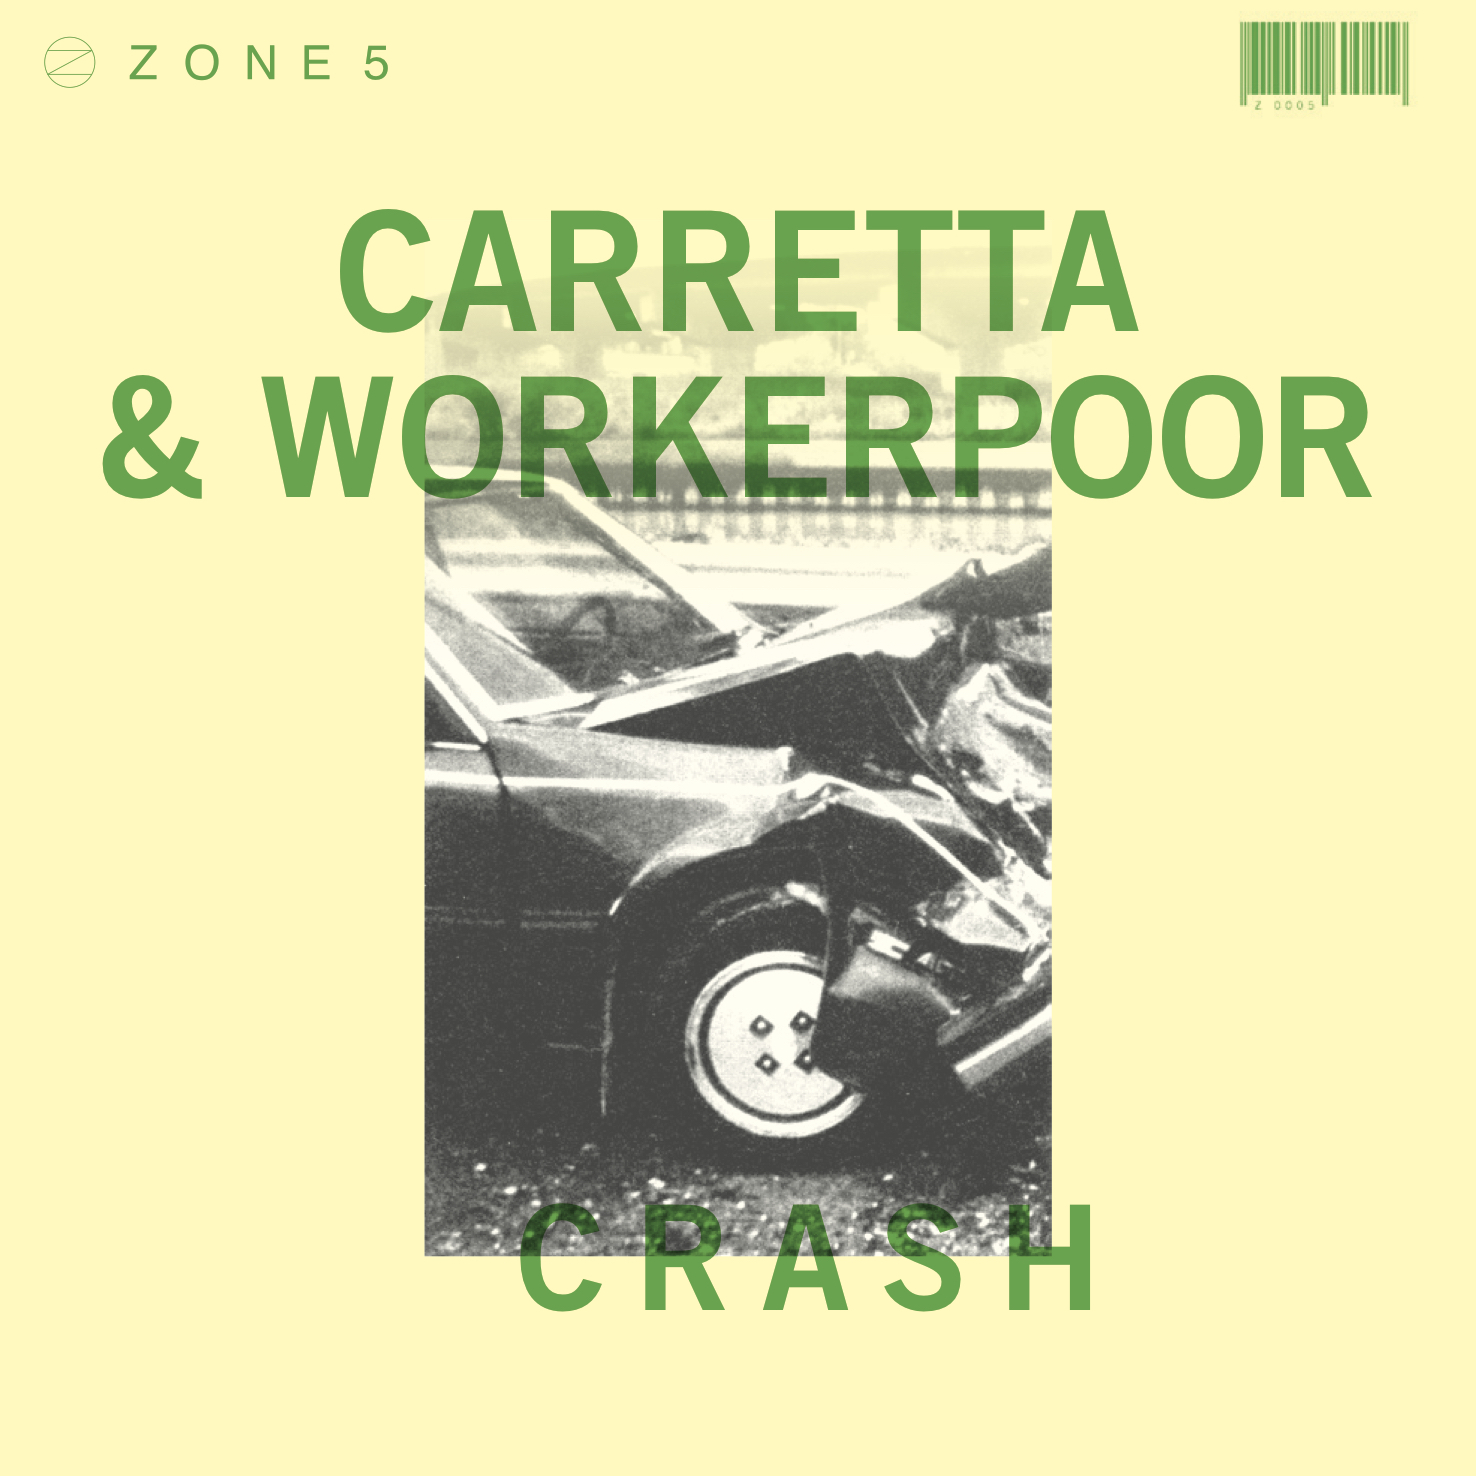 ZONE 5 CARRETTA & Workerpoor